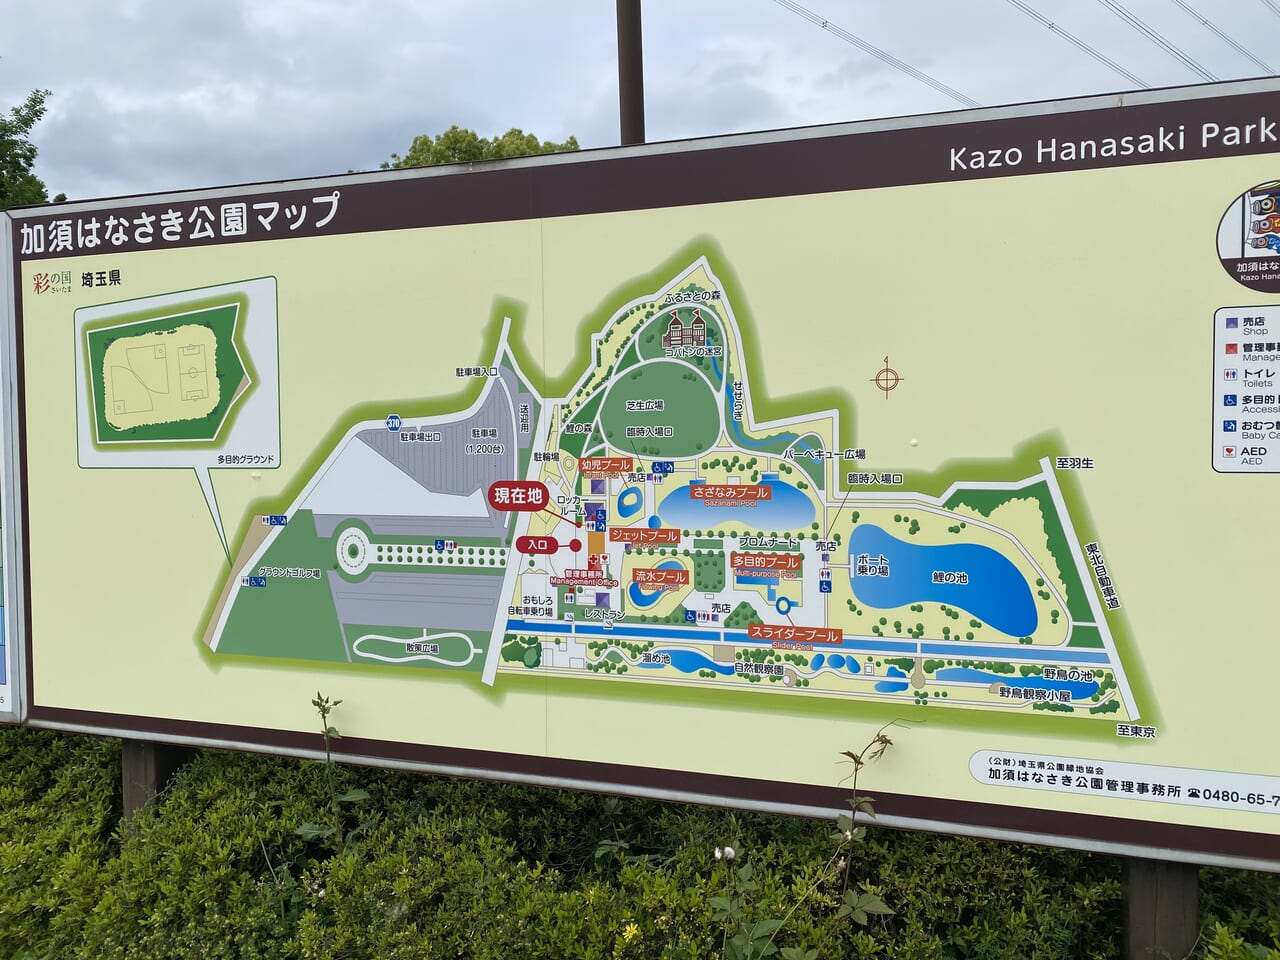 加須はなさき公園の園内マップ